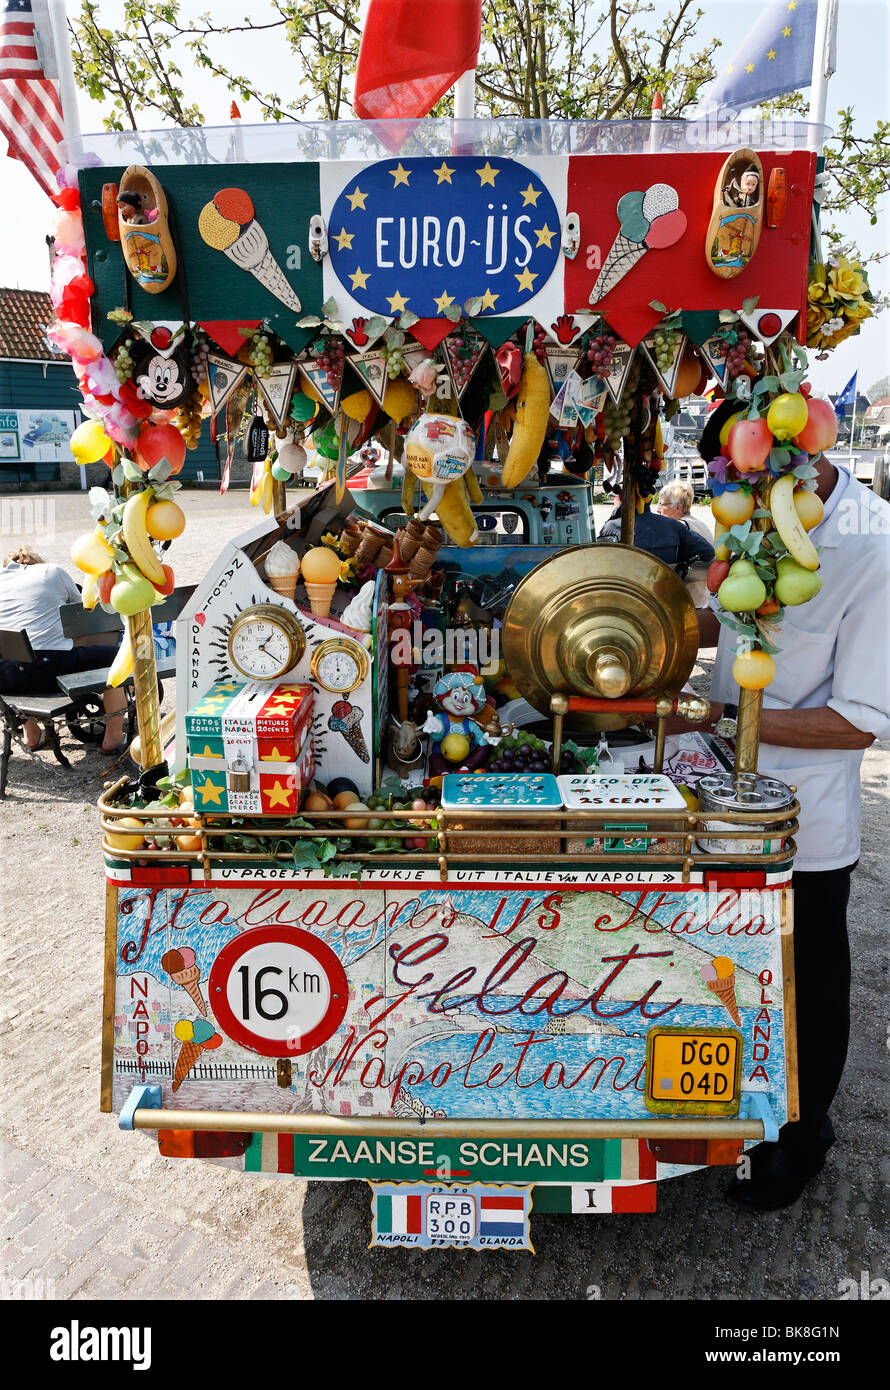 Pintoresco decorado con carro de helados helados Italianos, museo al aire libre Zaanse Schans, Zaanstadt, provincia del norte Hollan Foto de stock